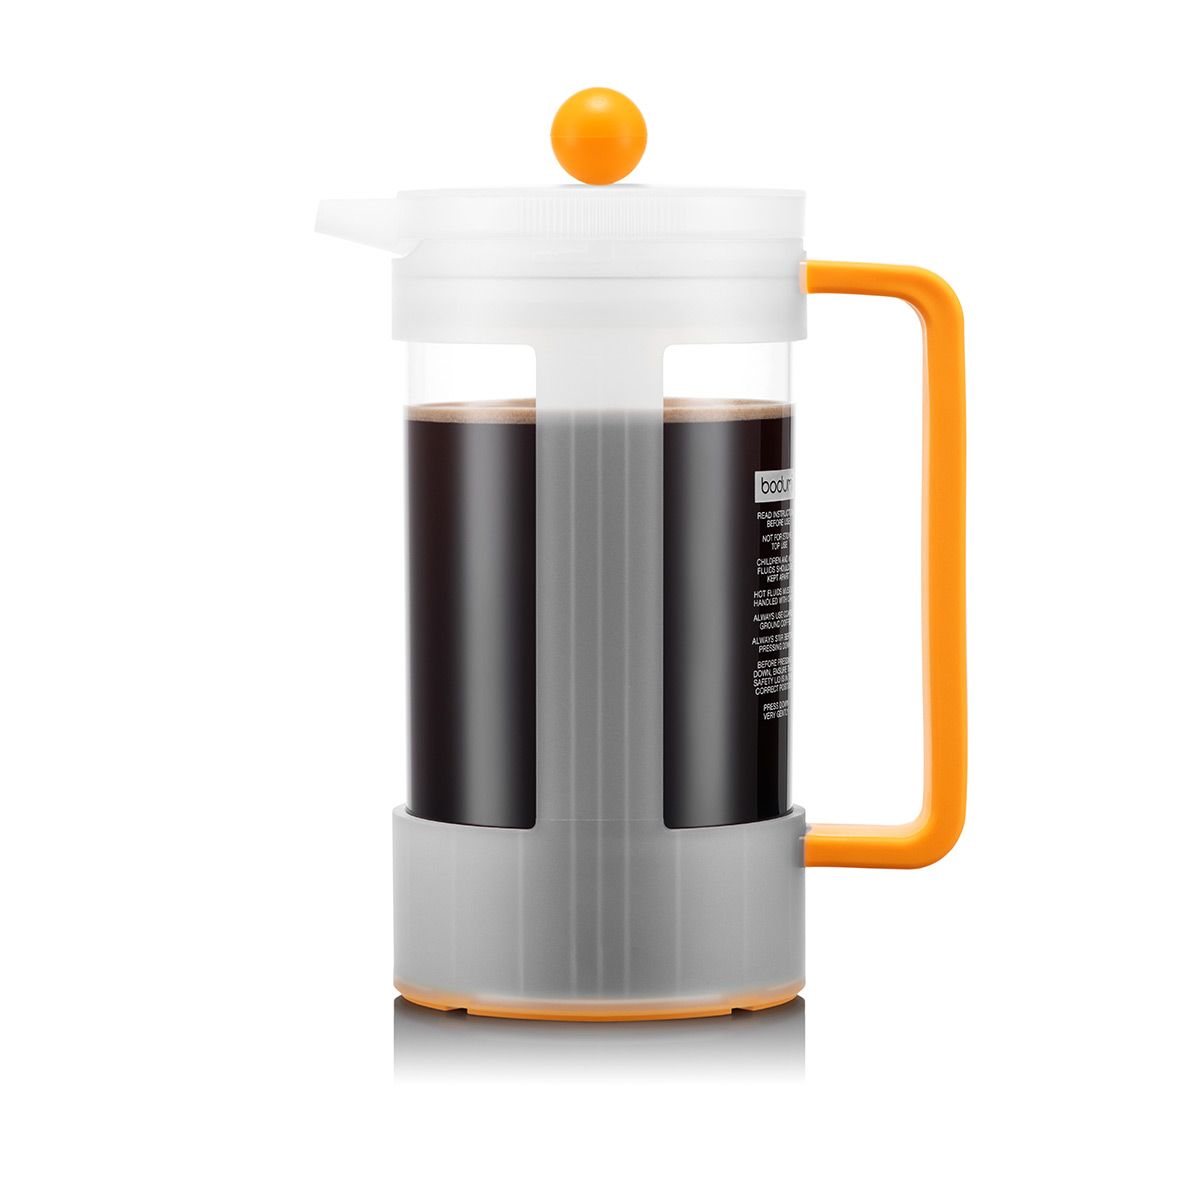 Bodum Bistro 11142 Dripper Coffee Brewer with Press Orange 4 Cup